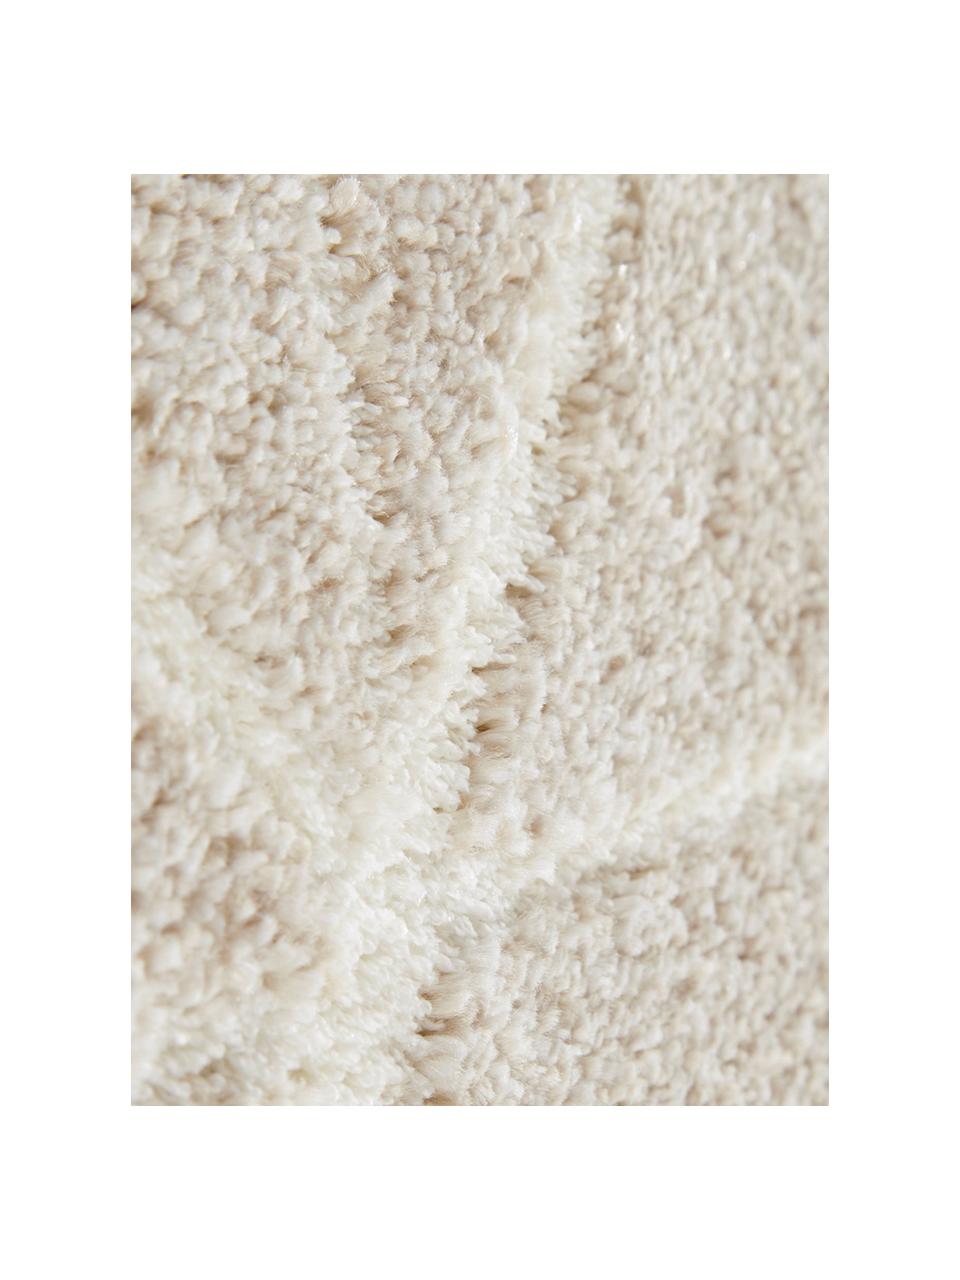 Teppich Arles in Beige-Creme, mit grafischem Muster, Flor: 85% Polypropylen, 15% Pol, Beige, Creme, B 200 x L 290 cm (Größe L)